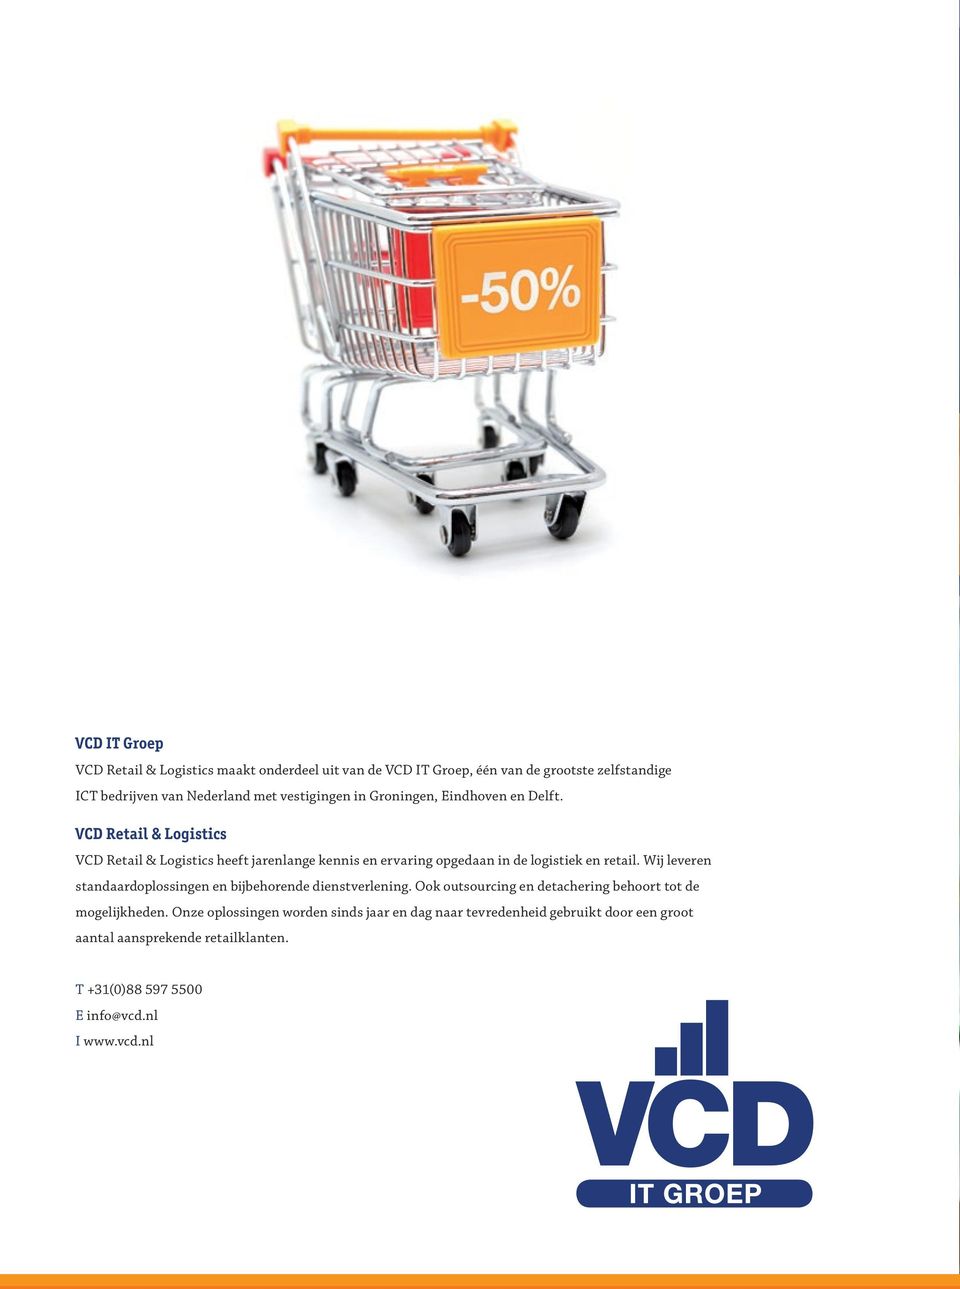 VCD Retail & Logistics VCD Retail & Logistics heeft jarenlange kennis en ervaring opgedaan in de logistiek en retail.